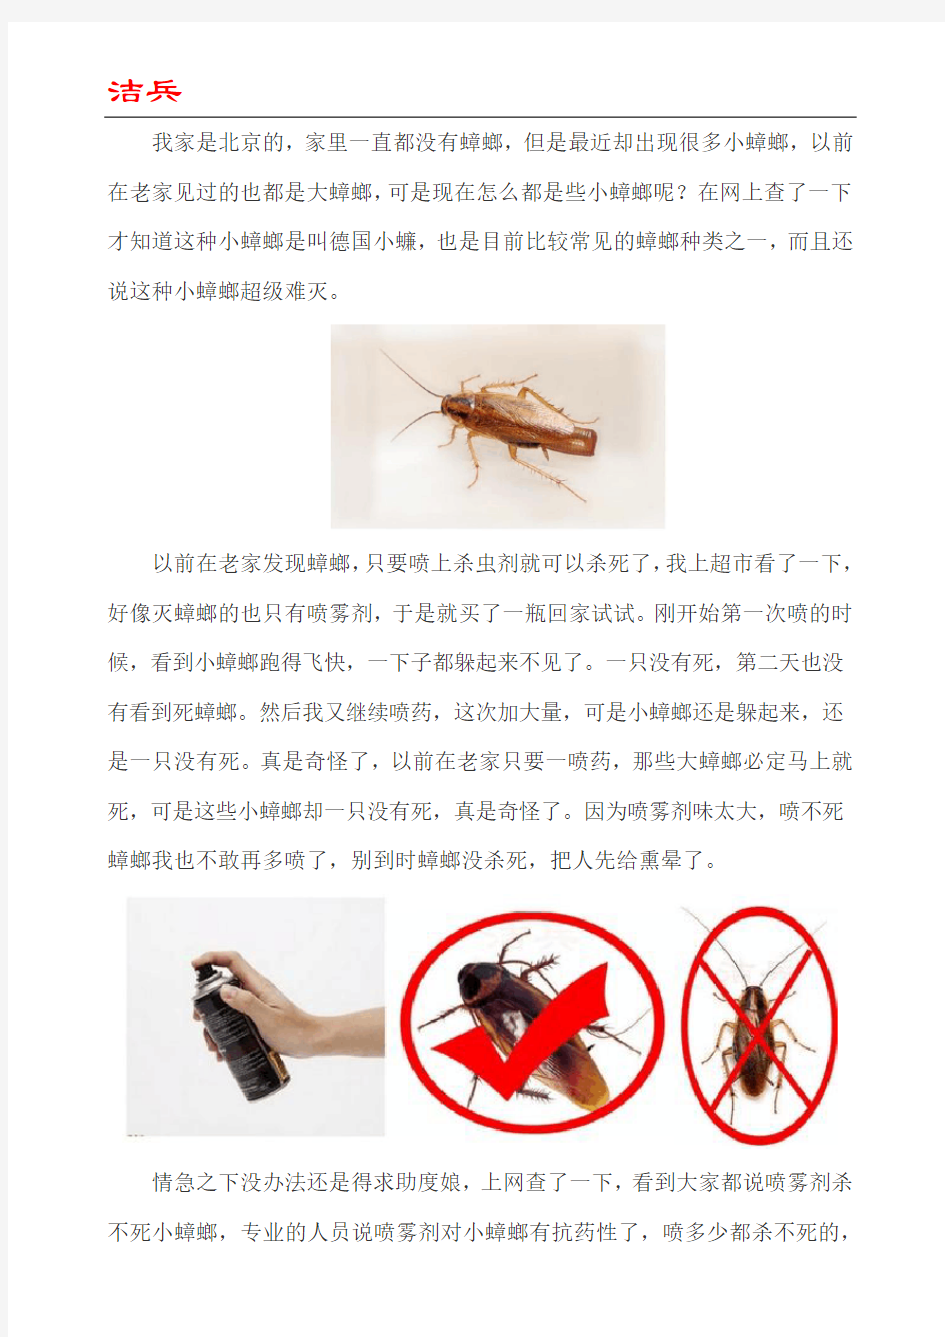 北京家庭灭蟑螂的经验分享